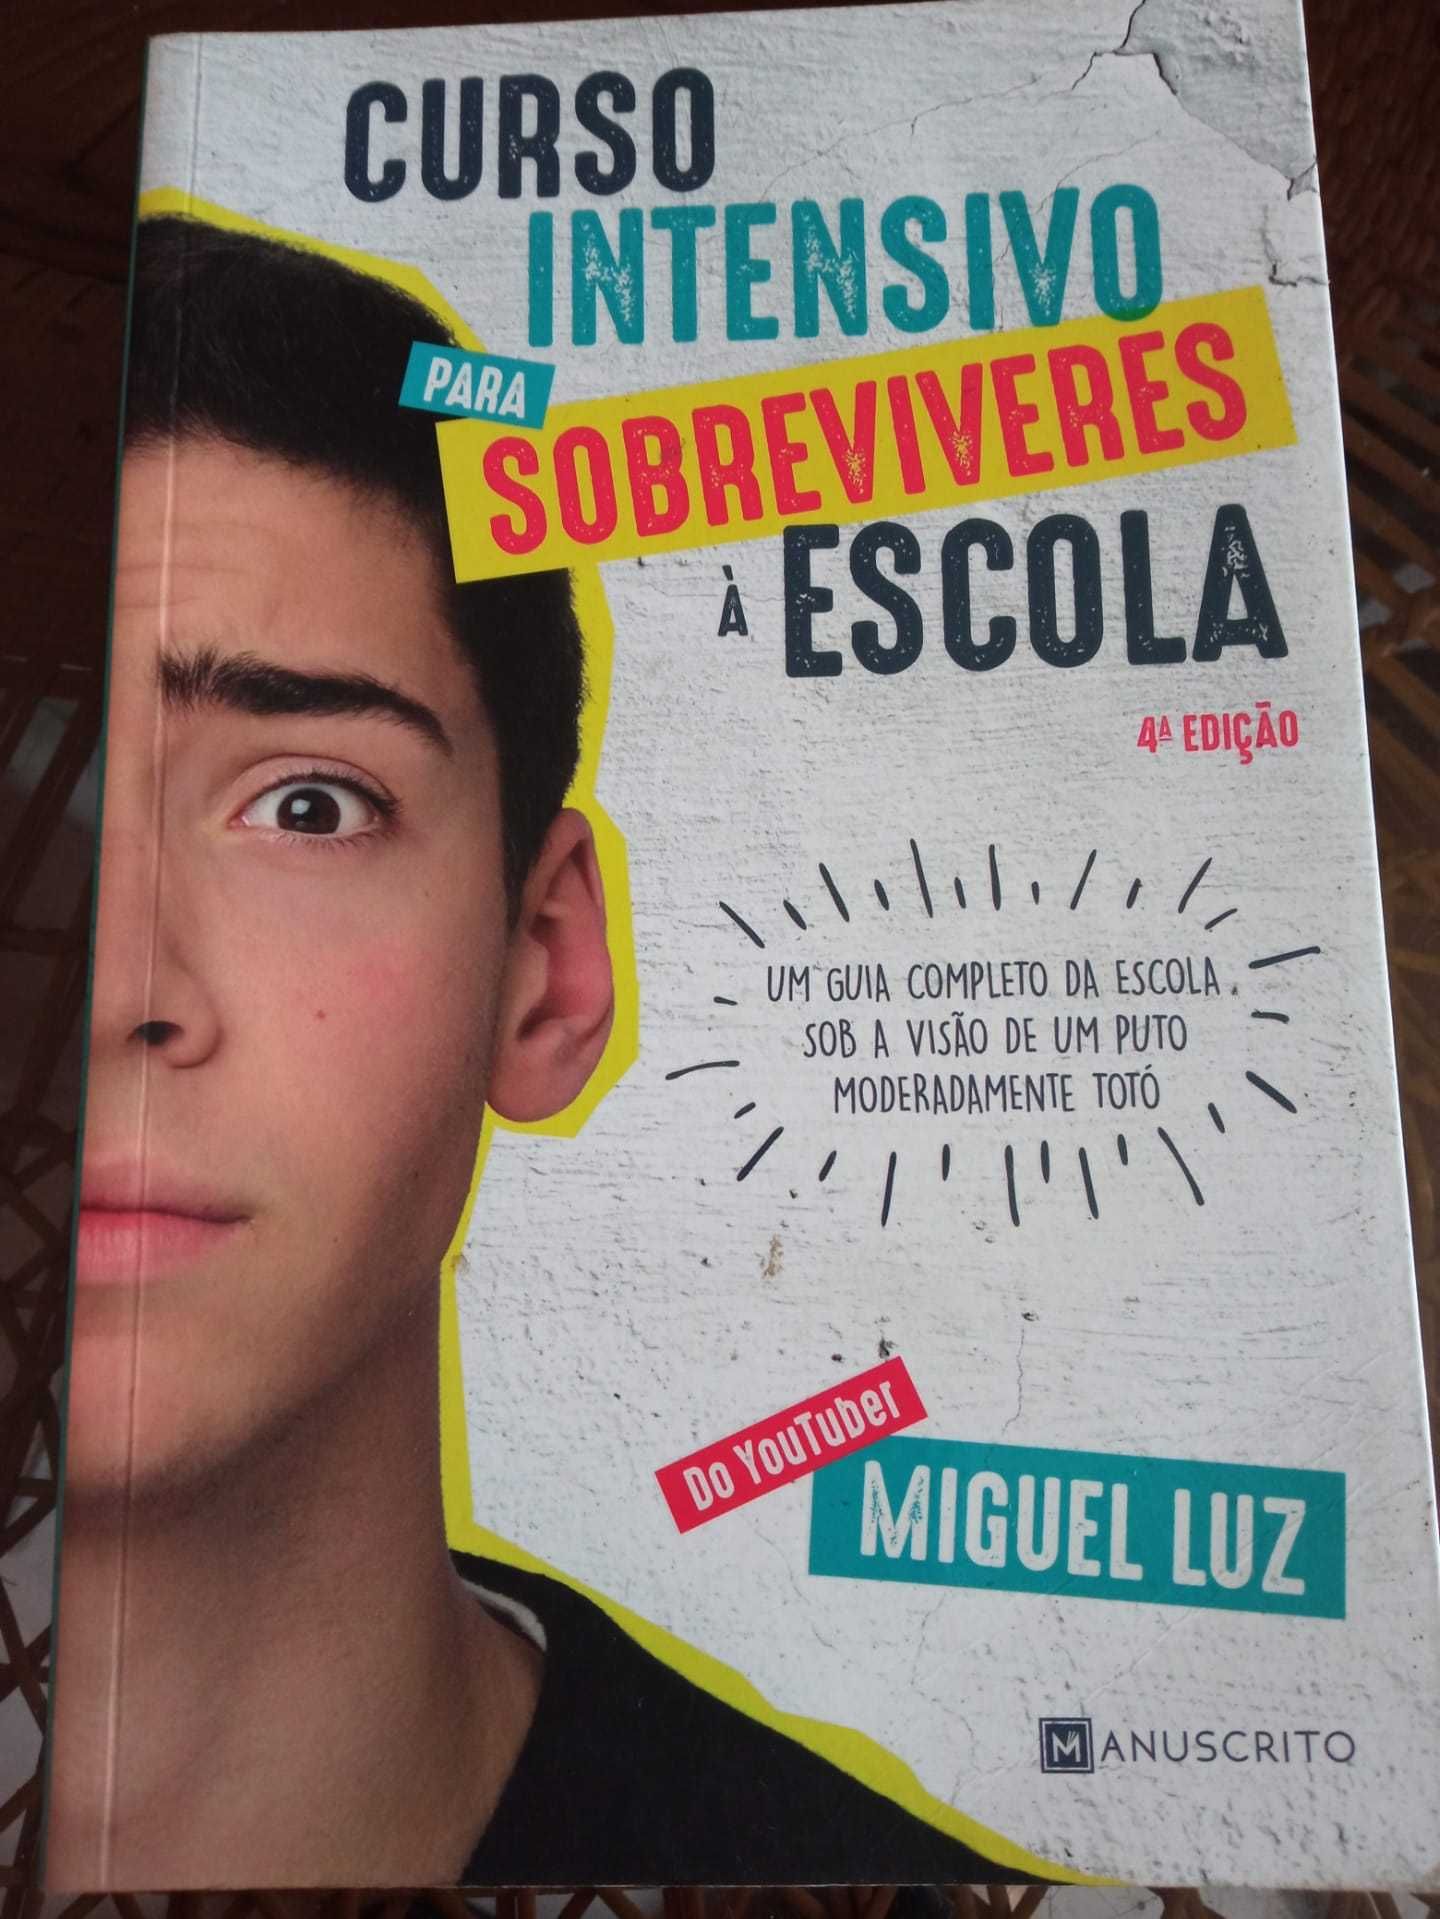 Livro "Curso Intensivo para Sobreviver à Escola" de Miguel Luz